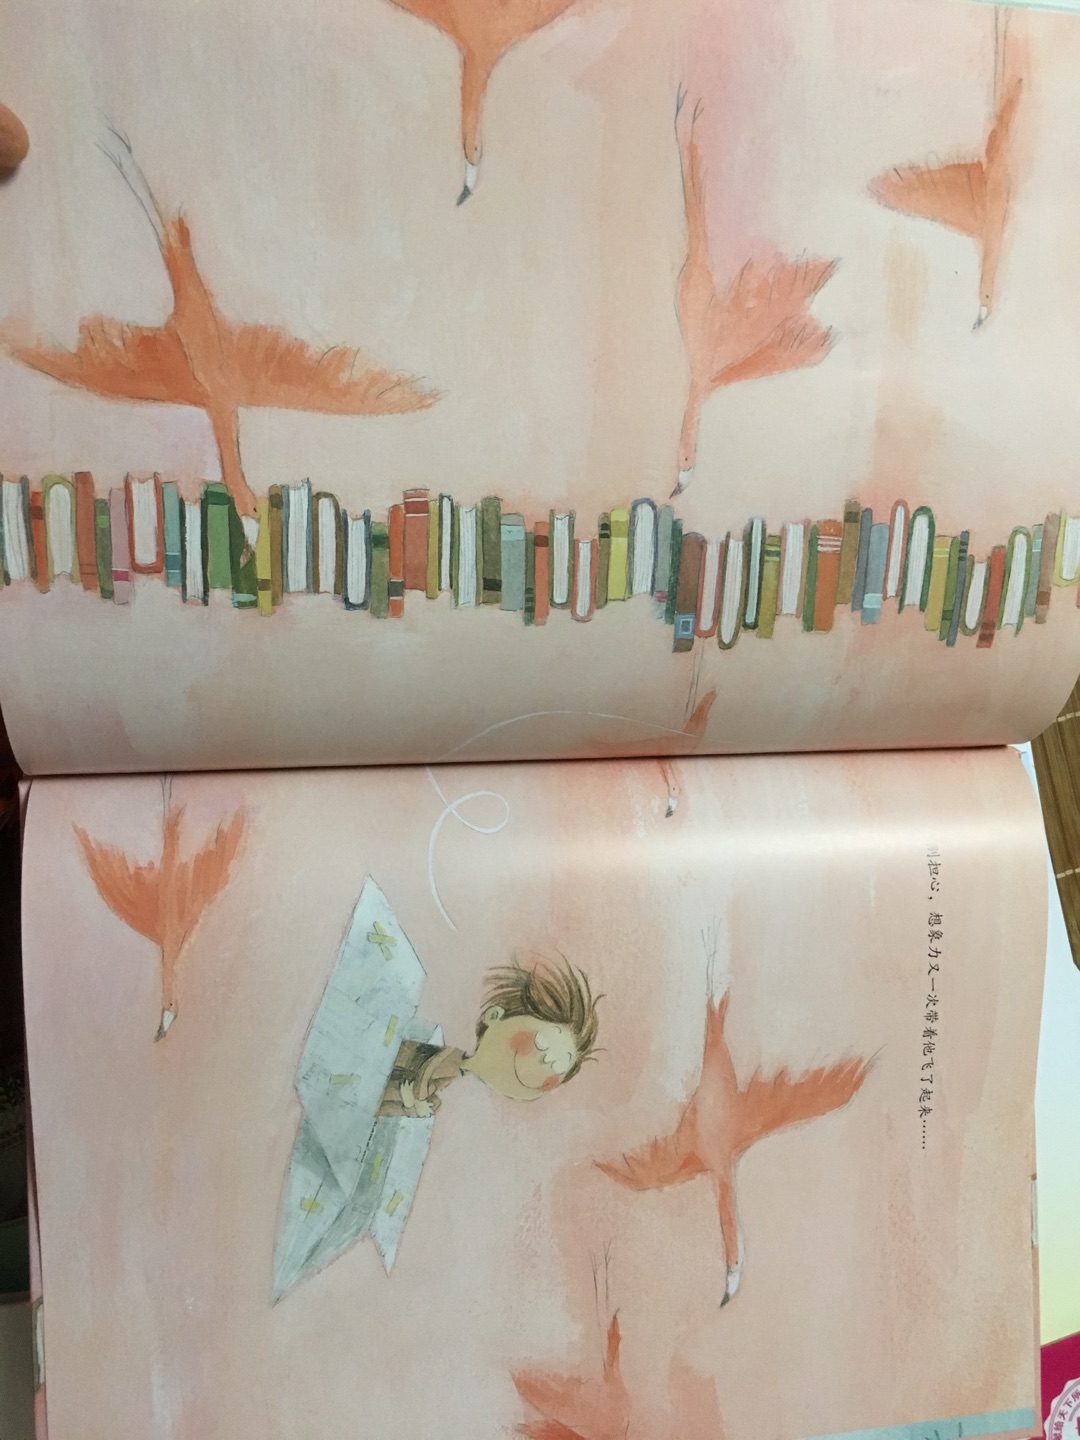 书的绘画风格有点模糊雾蒙蒙的，内容不错，讲一个小男孩想飞起来，妈妈给了他一本书，他就爱上了看书，看了很多很多书，书堆积如山，想象力丰富的飞了起来